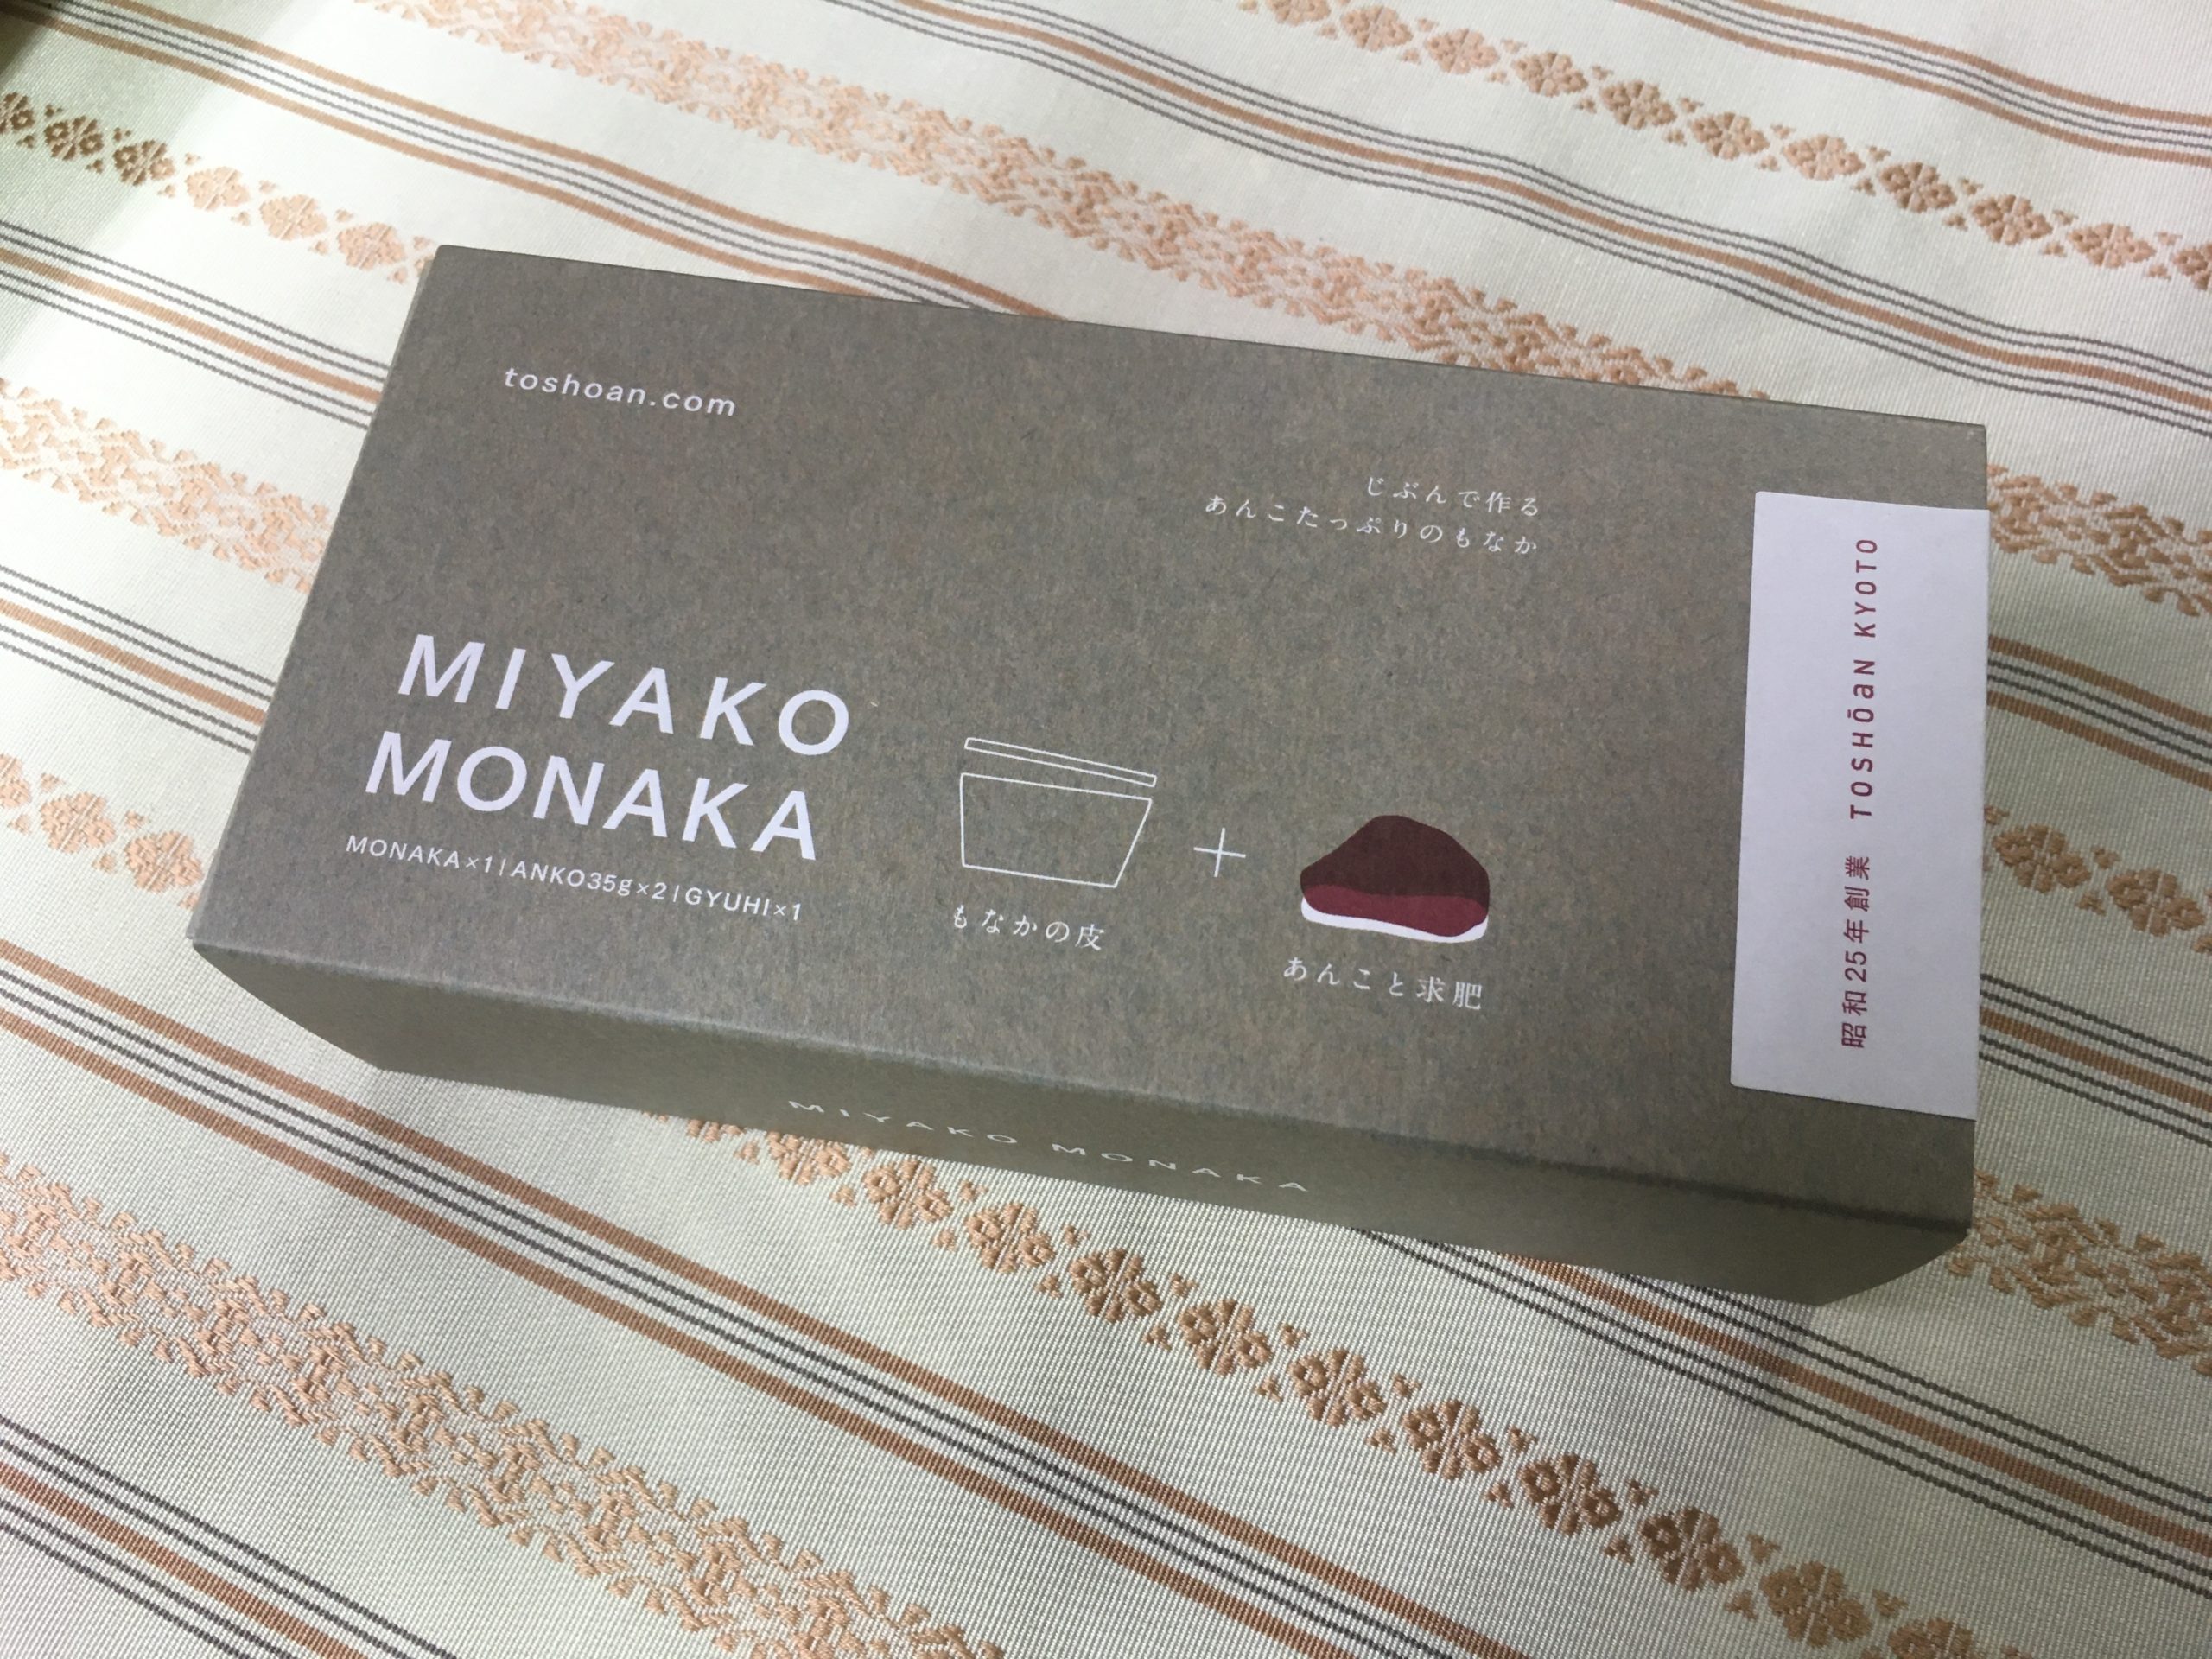 都松庵の「MIYAKO MONAKA」